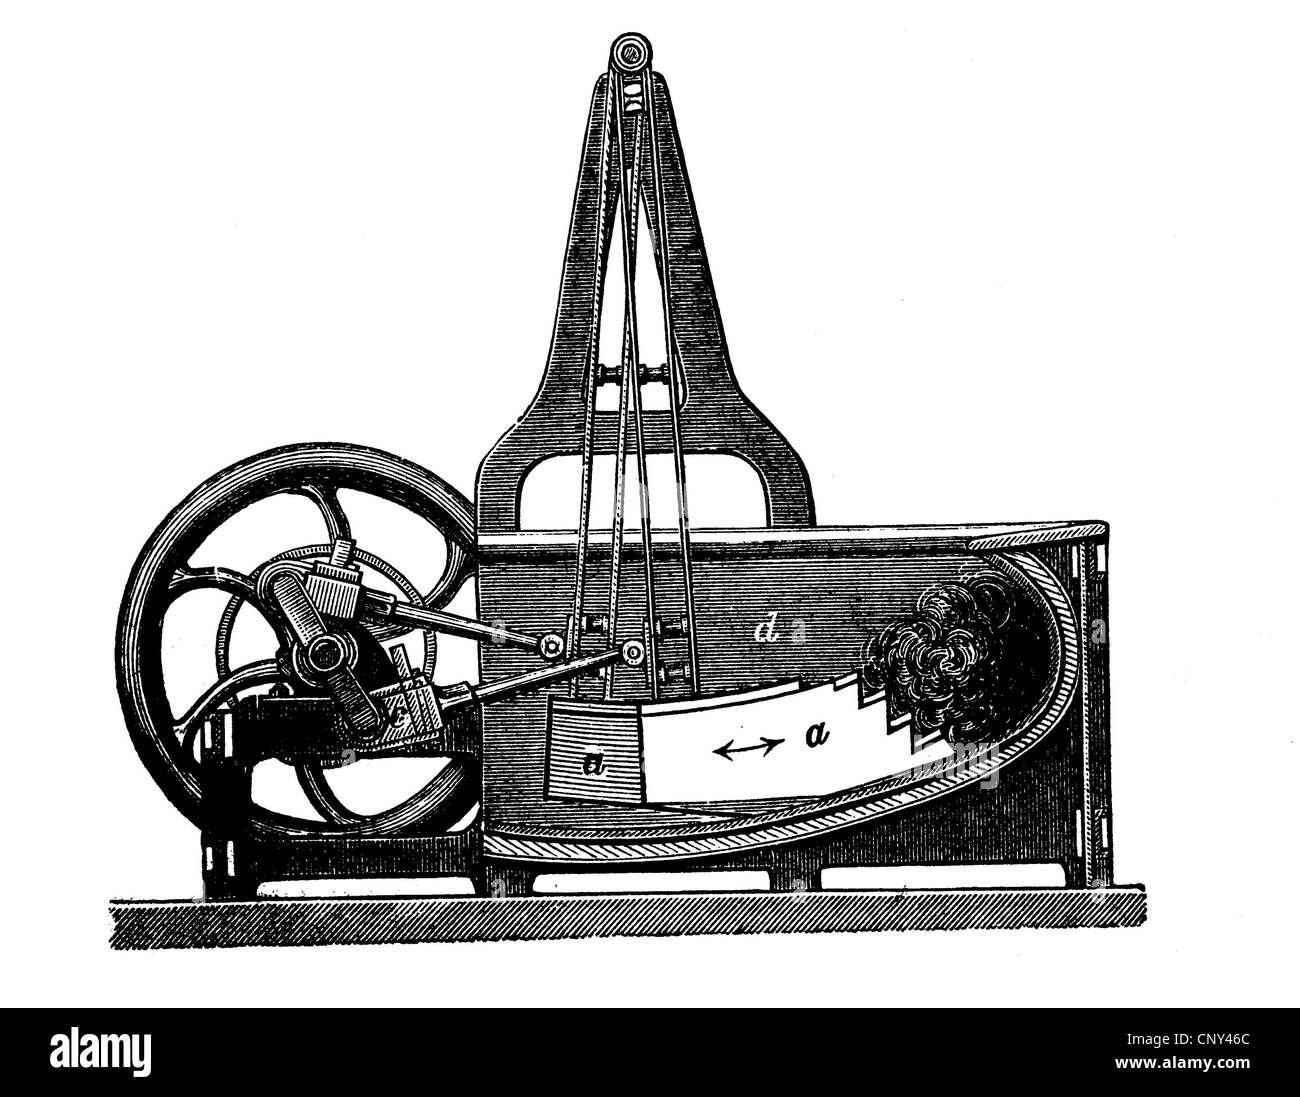 Finishing machine, crank fulling machine, historical illustration, wood engraving, circa 1888 Stock Photo